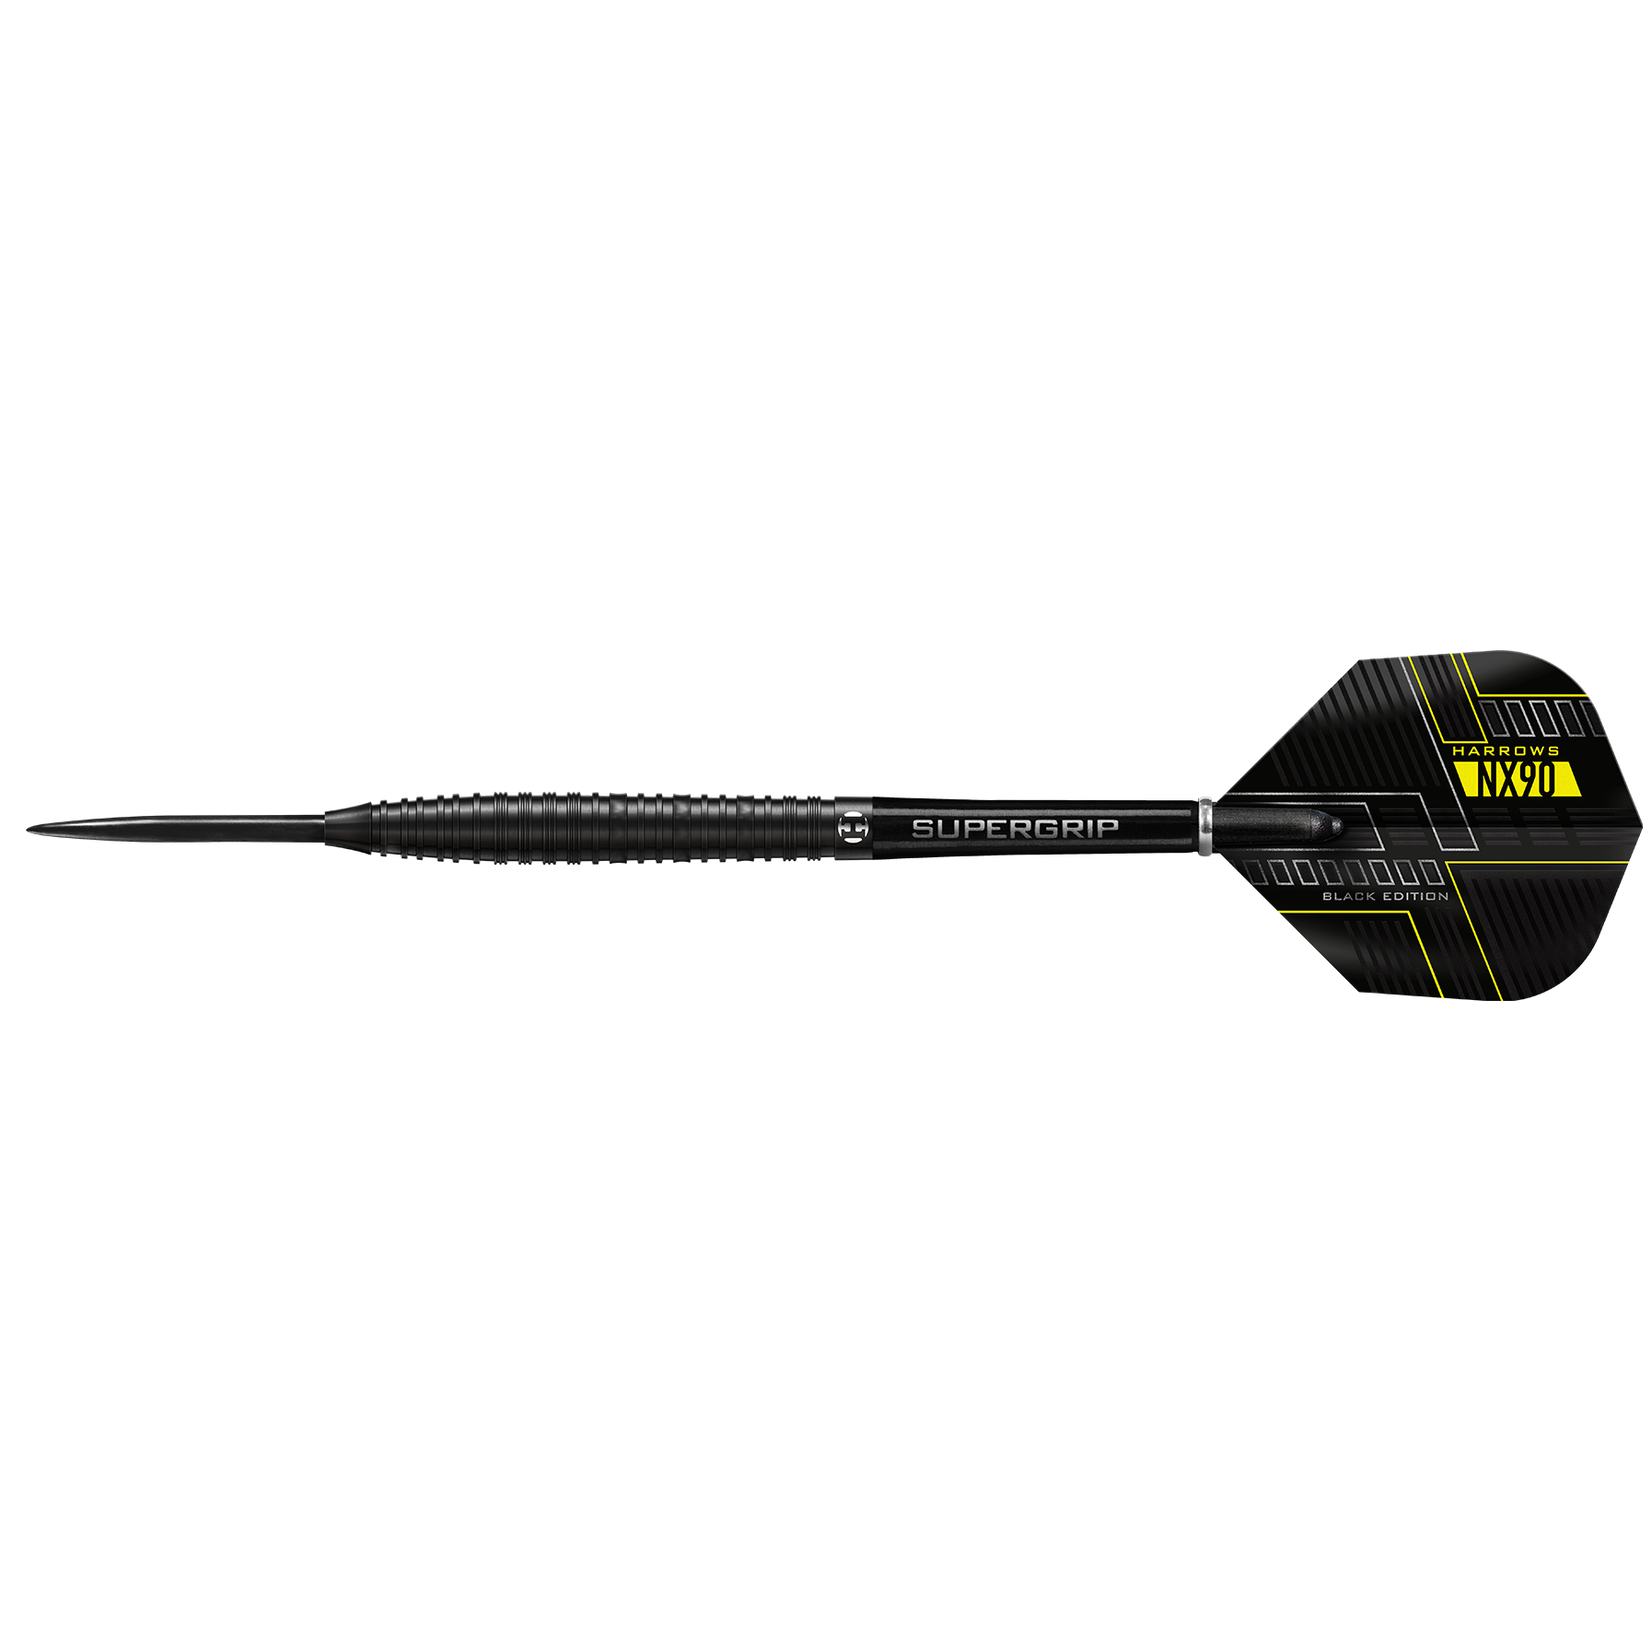 Harrows Darts Harrows NX90 Black Edition 90% Steel Tip Darts